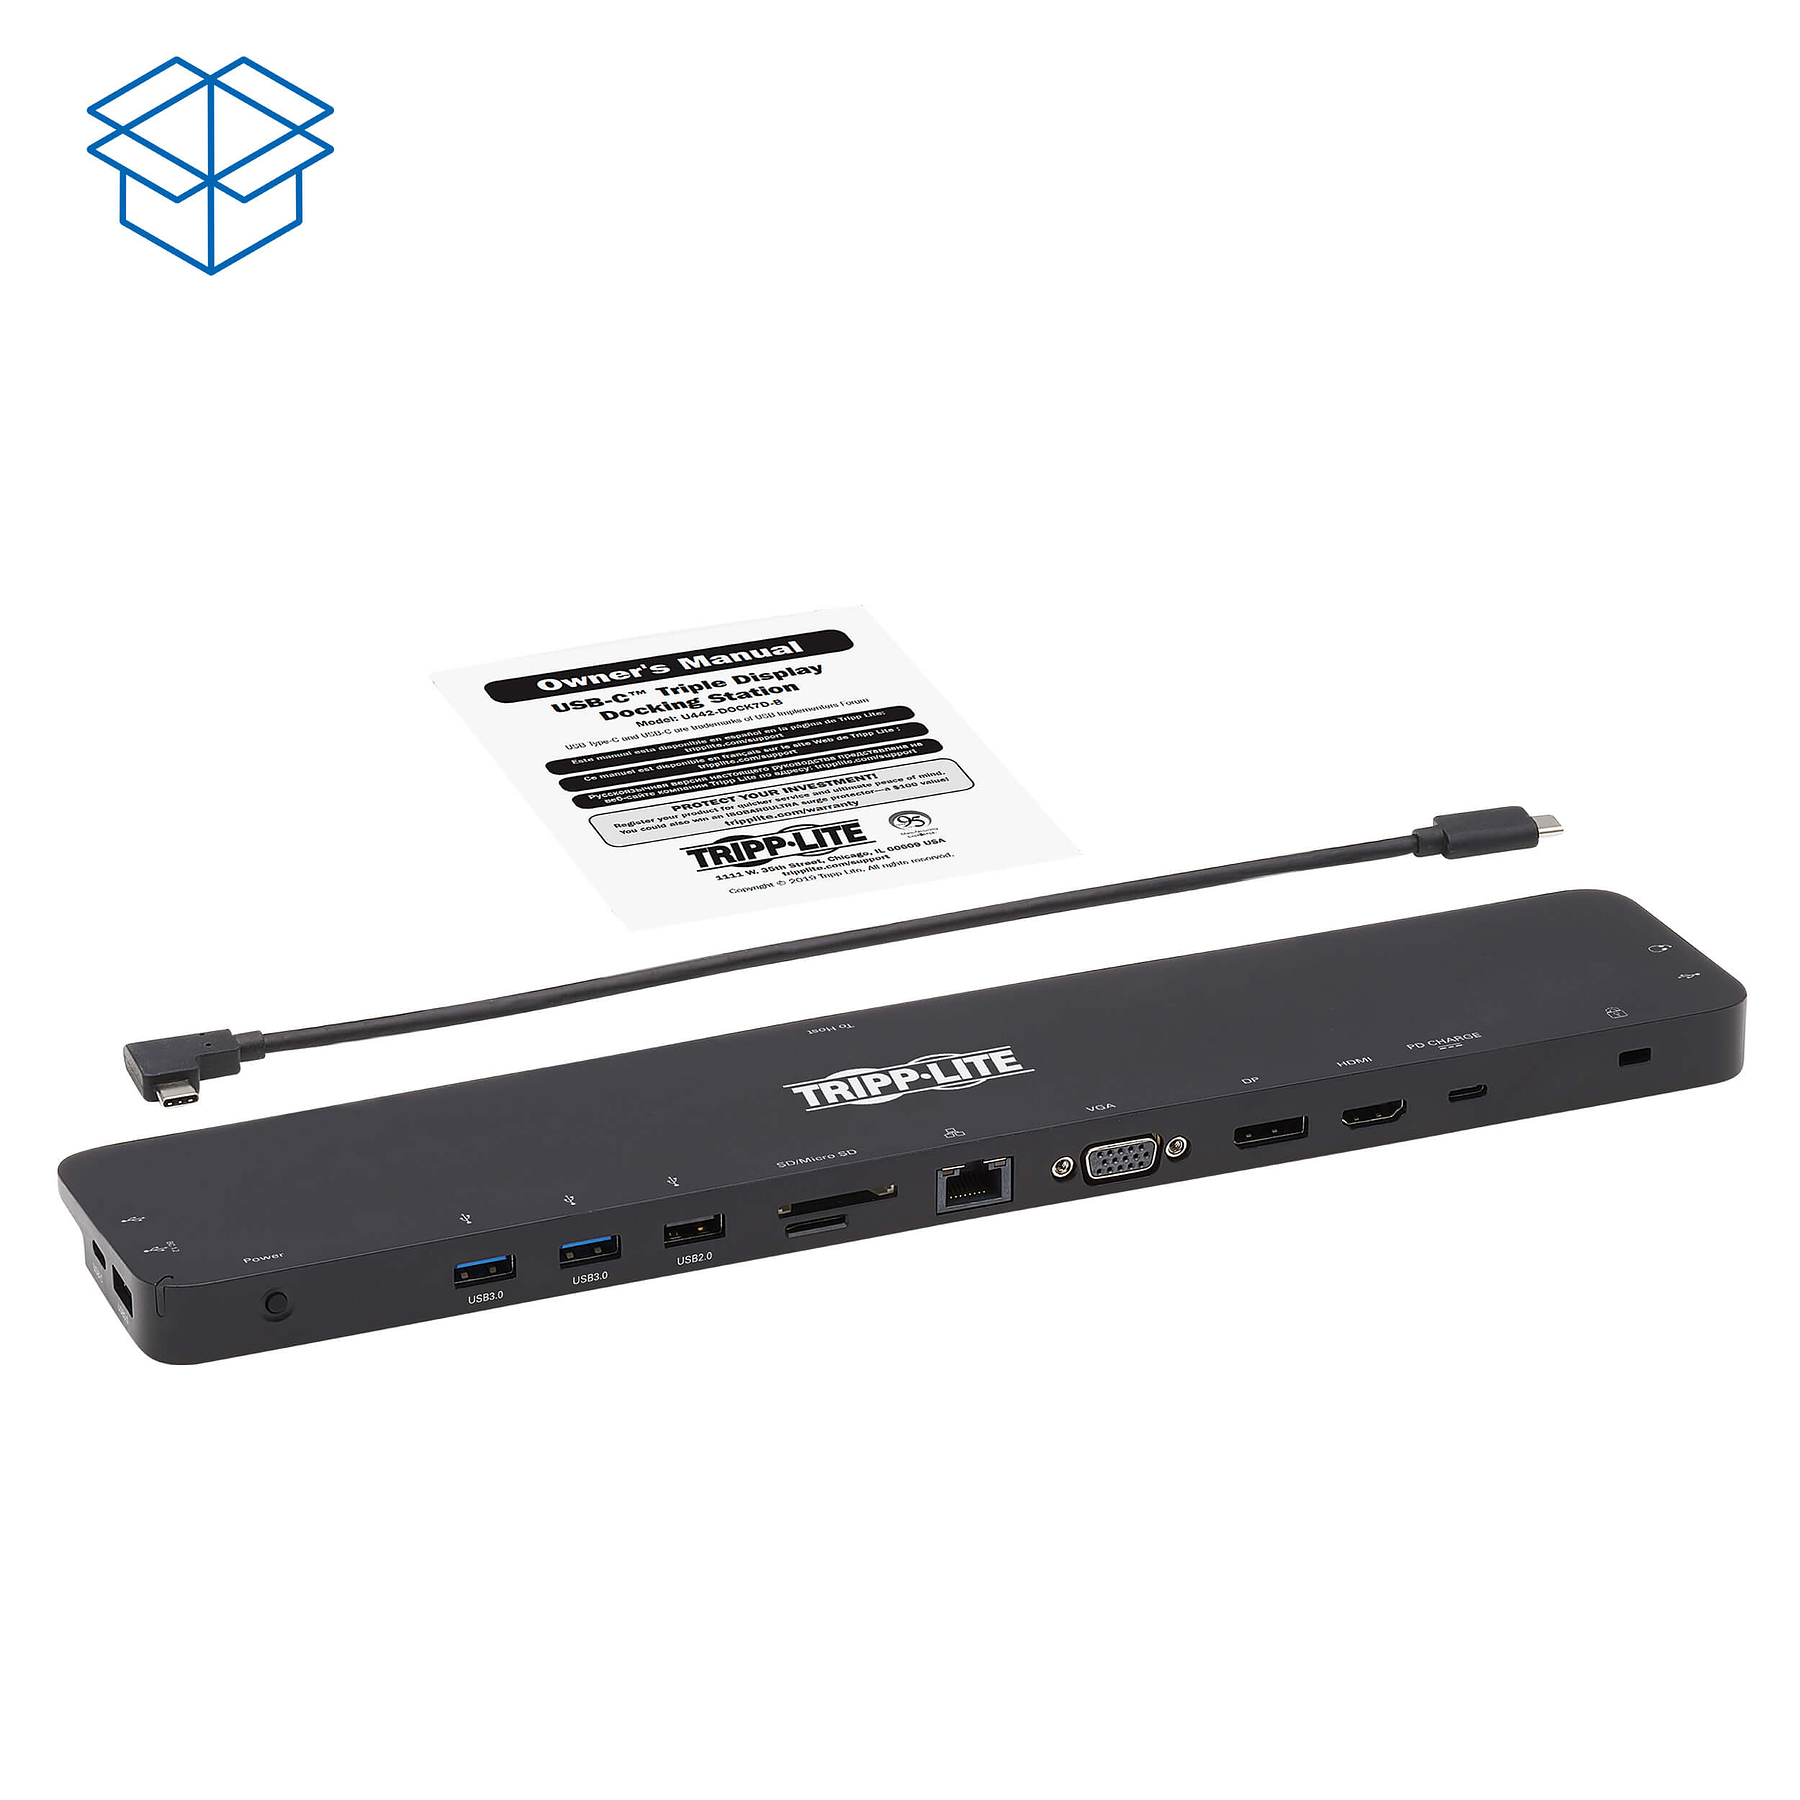 TrippLite U442-DOCK7D-B Docking Station USB-A/C 4K HDMI, DisplayPort, VGA